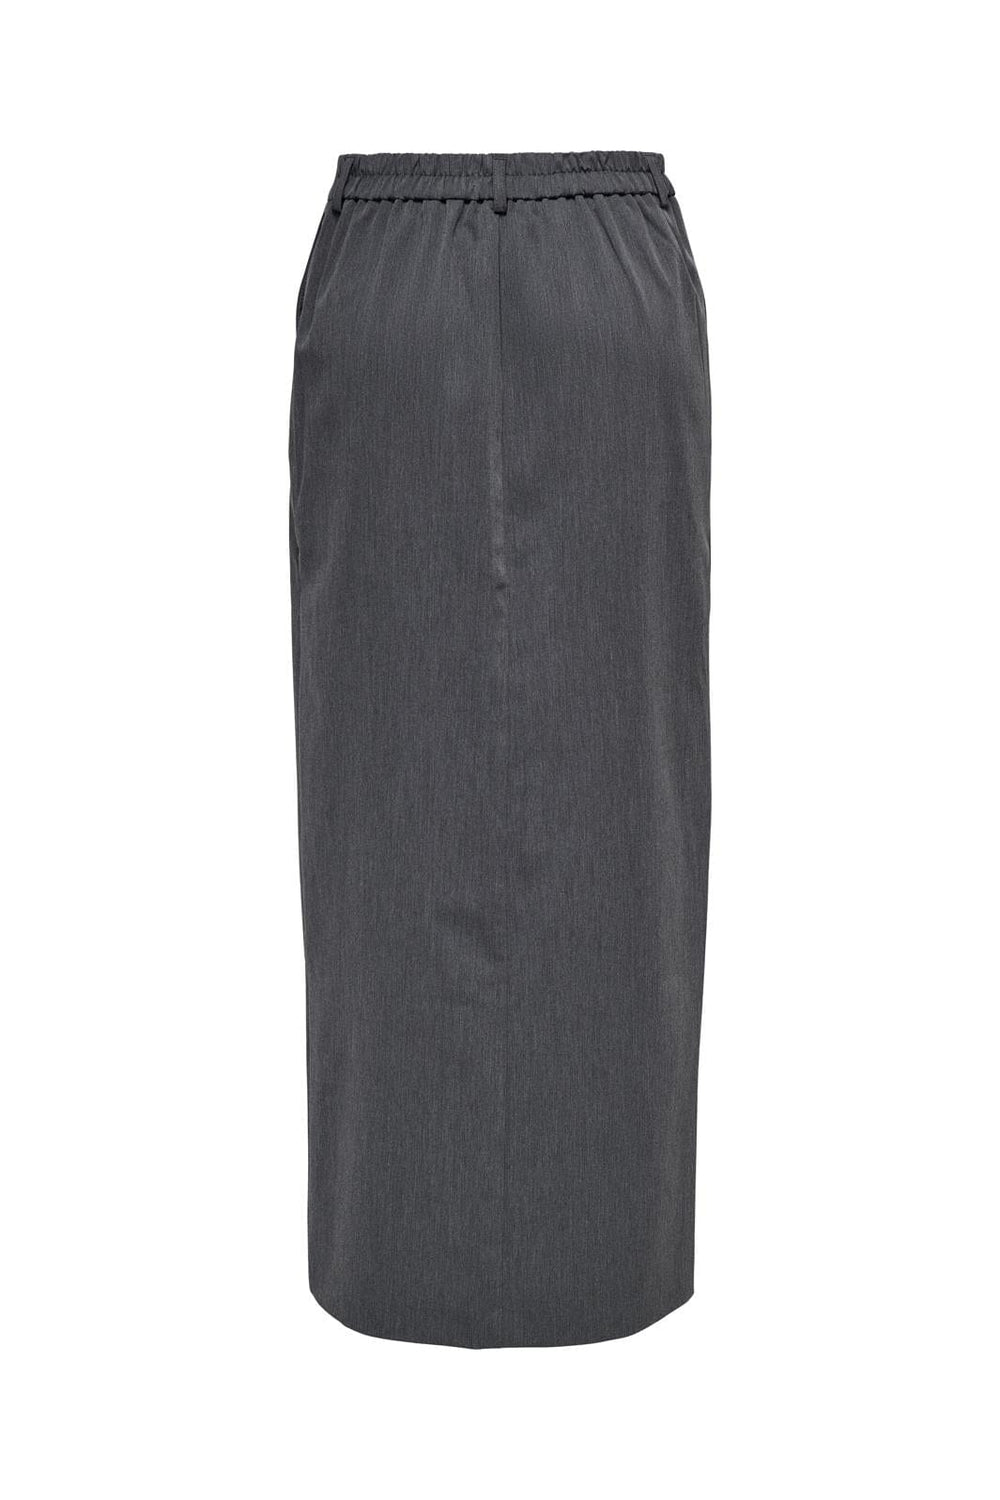 Only - Onllealys Maxi Skirt Tlr - 4600854 Grey Melange